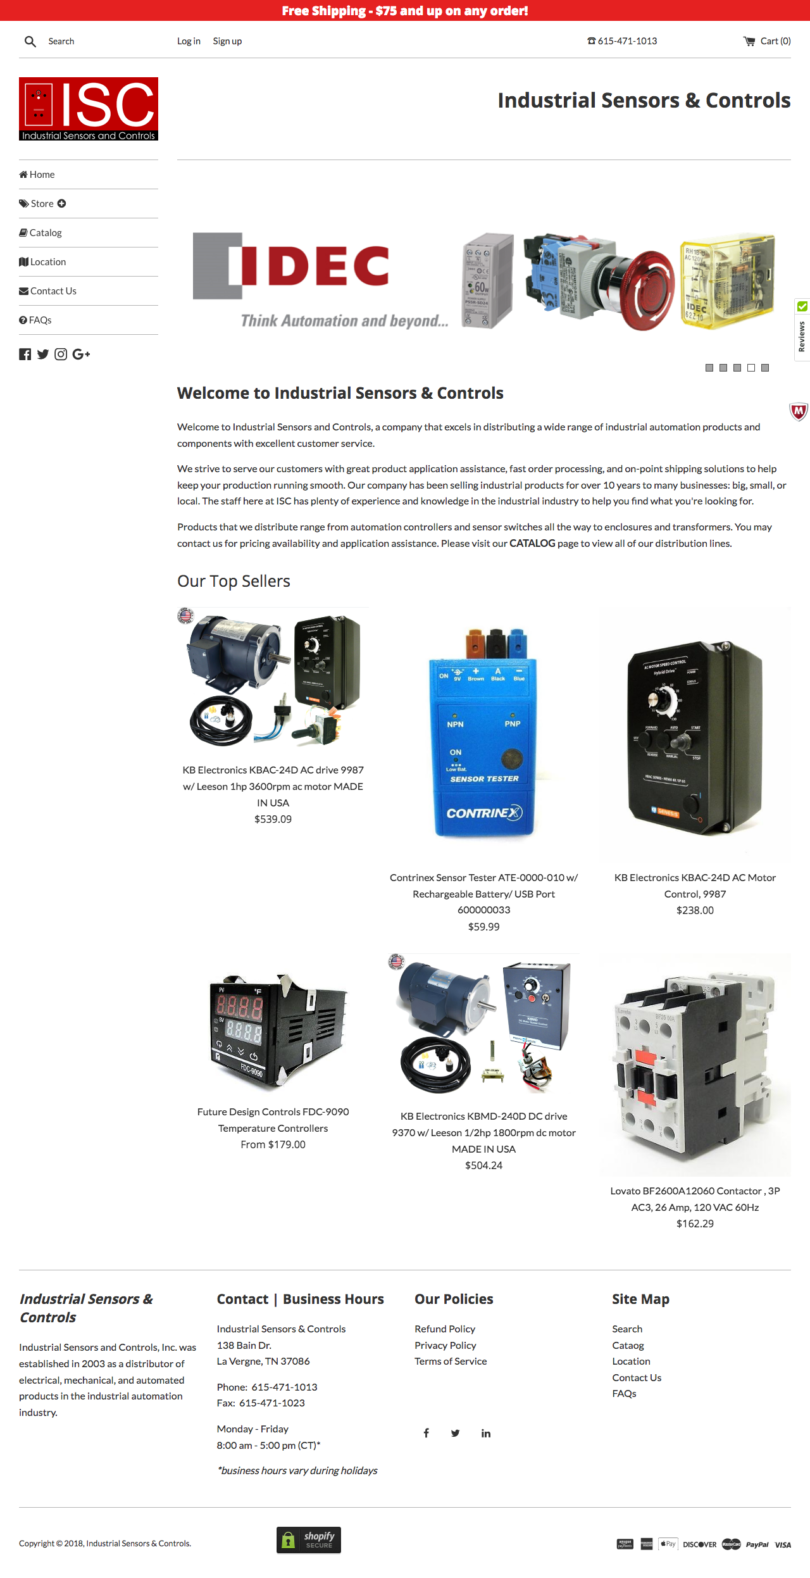 Industrial Sensors & Controls